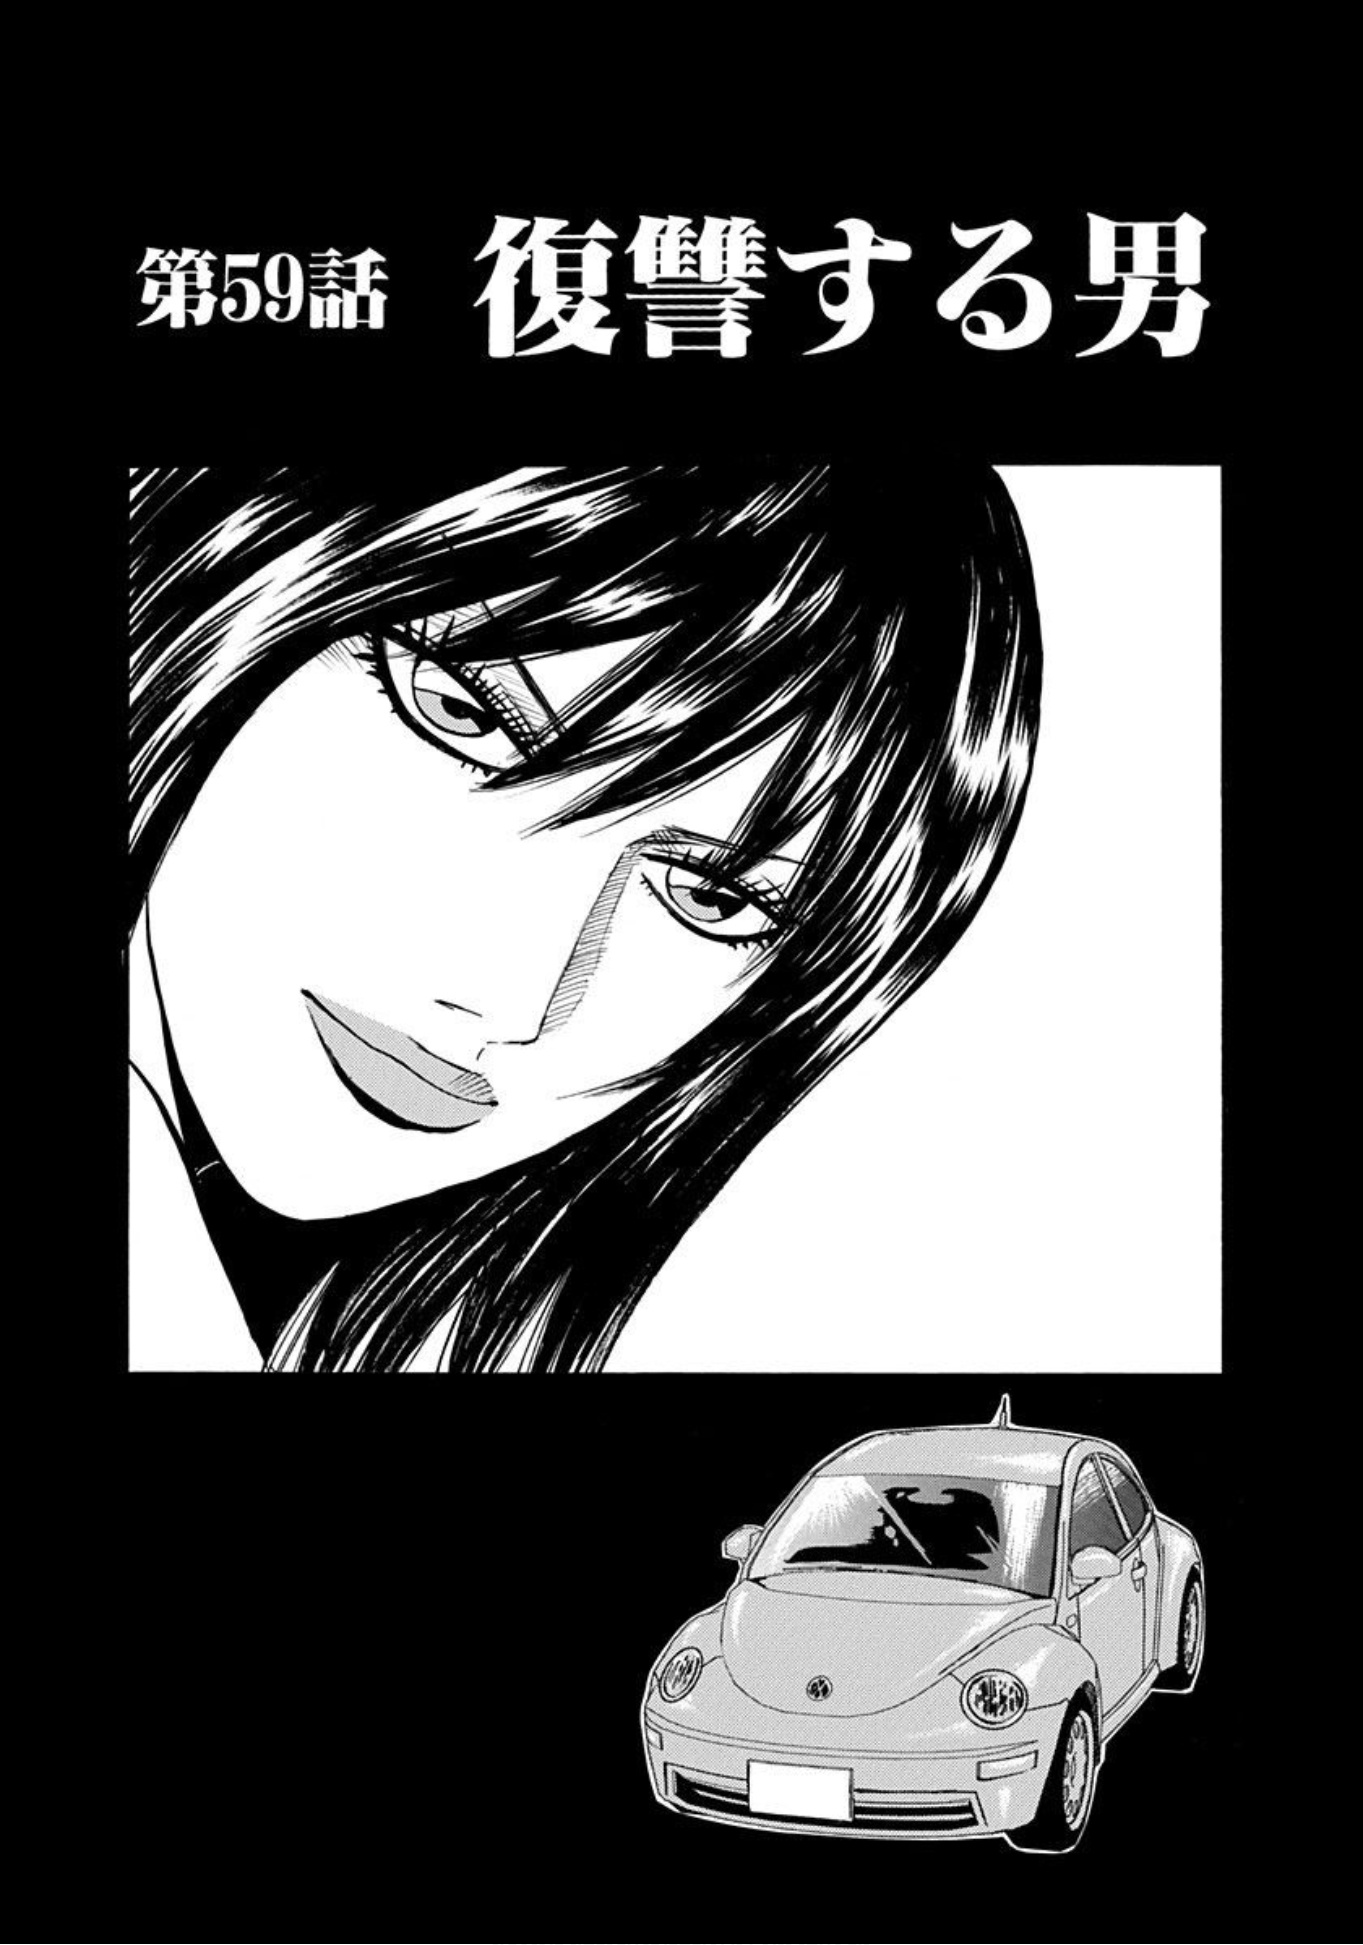 Uramiya Honpo Vol.9 Chapter 59: The Man Seeking Revenge - Picture 1